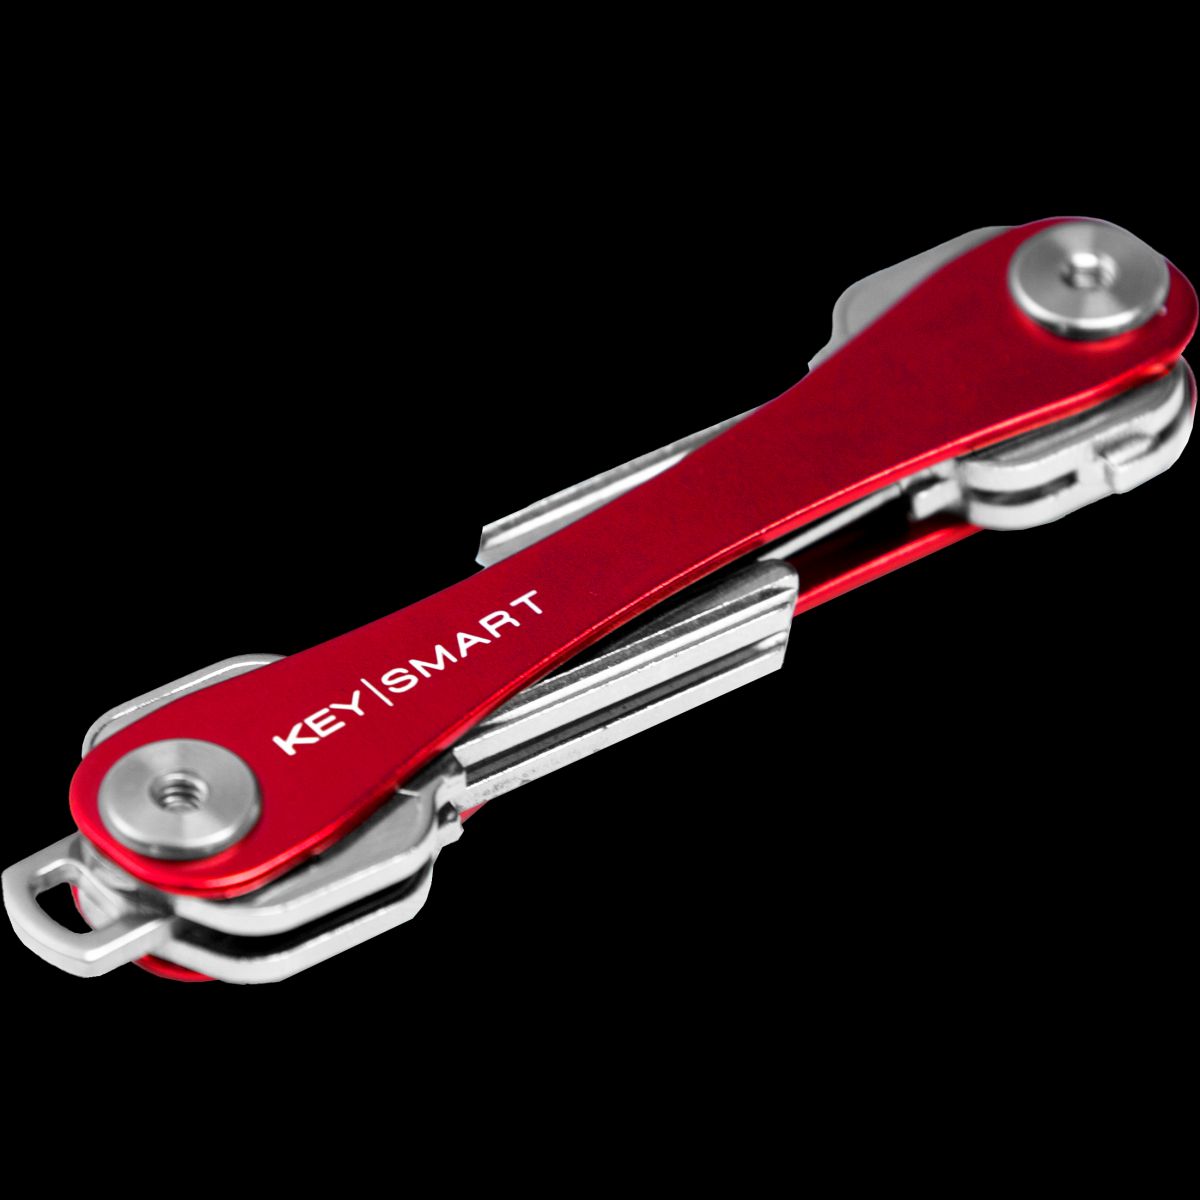 KeySmart Original Compact Key Holder up to 8 Keys Red for sale online 